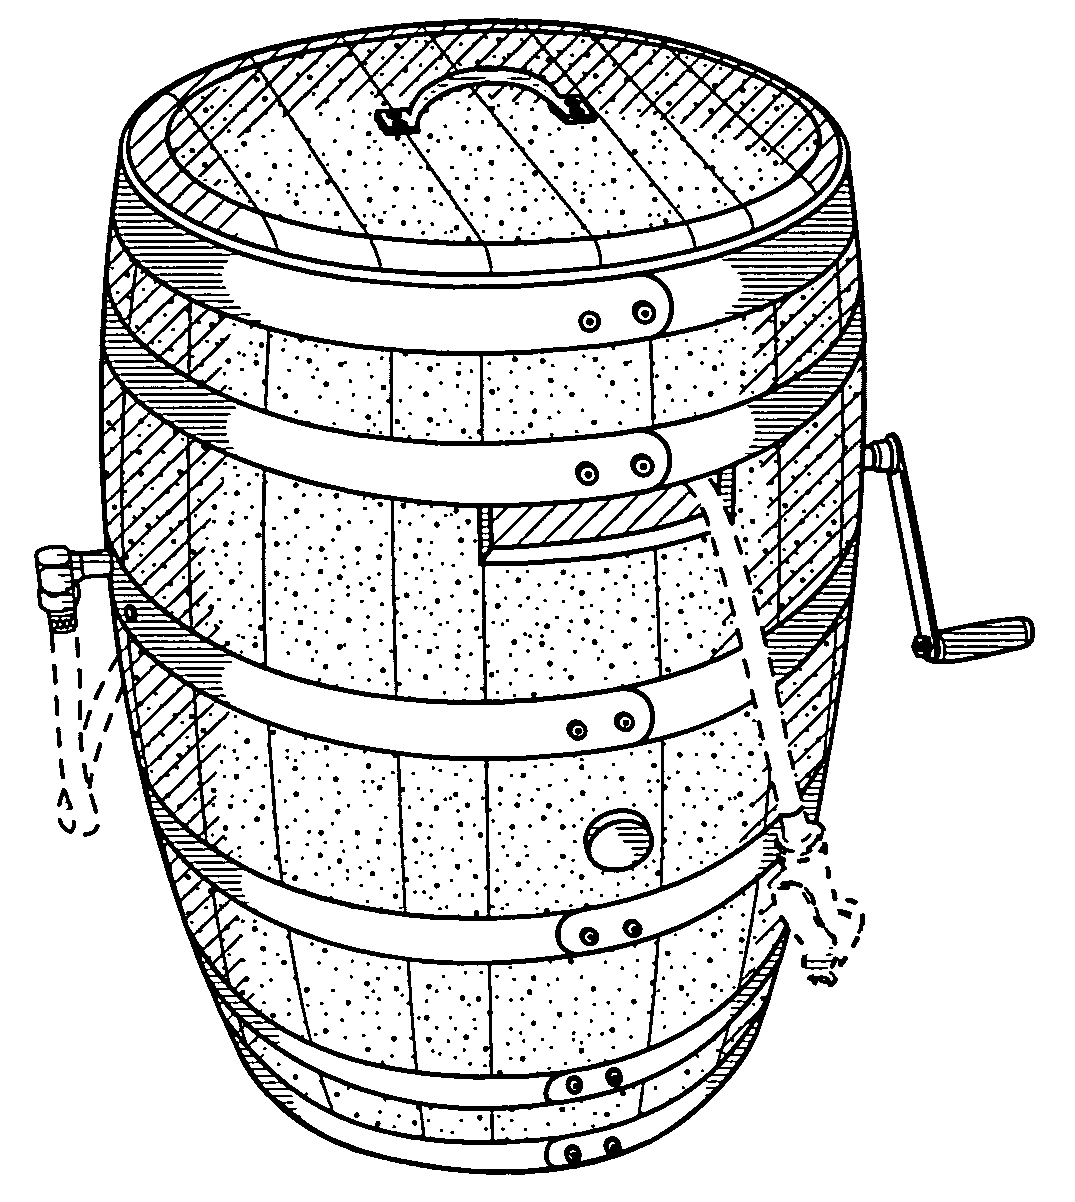 Garden hose reel concealed in a barrel